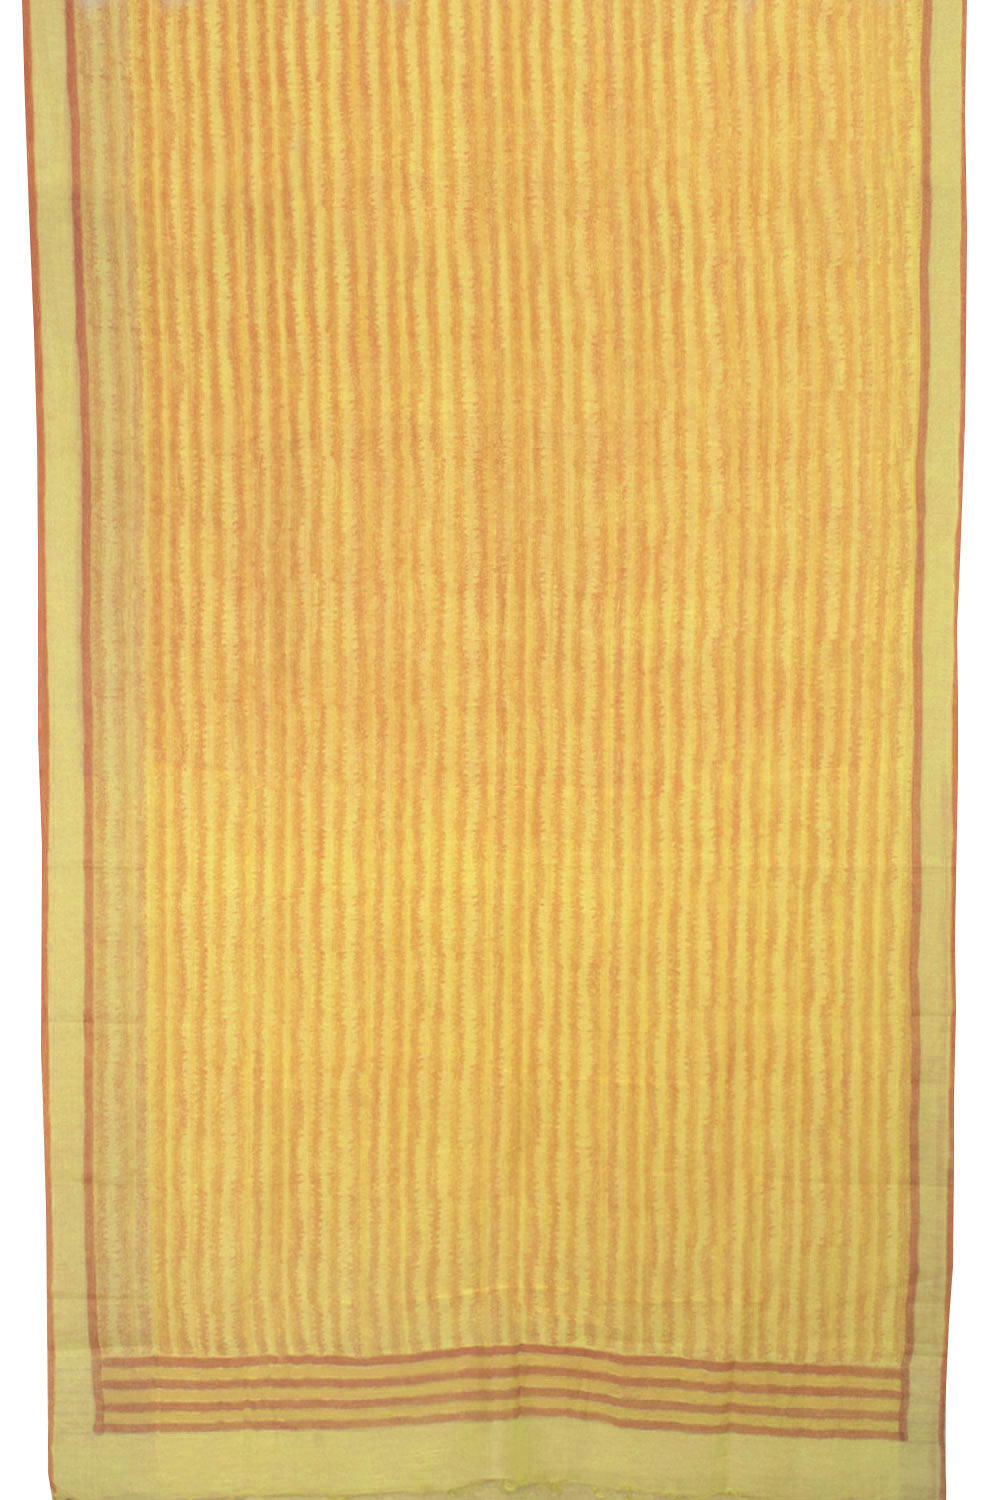 Printed Banarasi Linen Saree 10057899